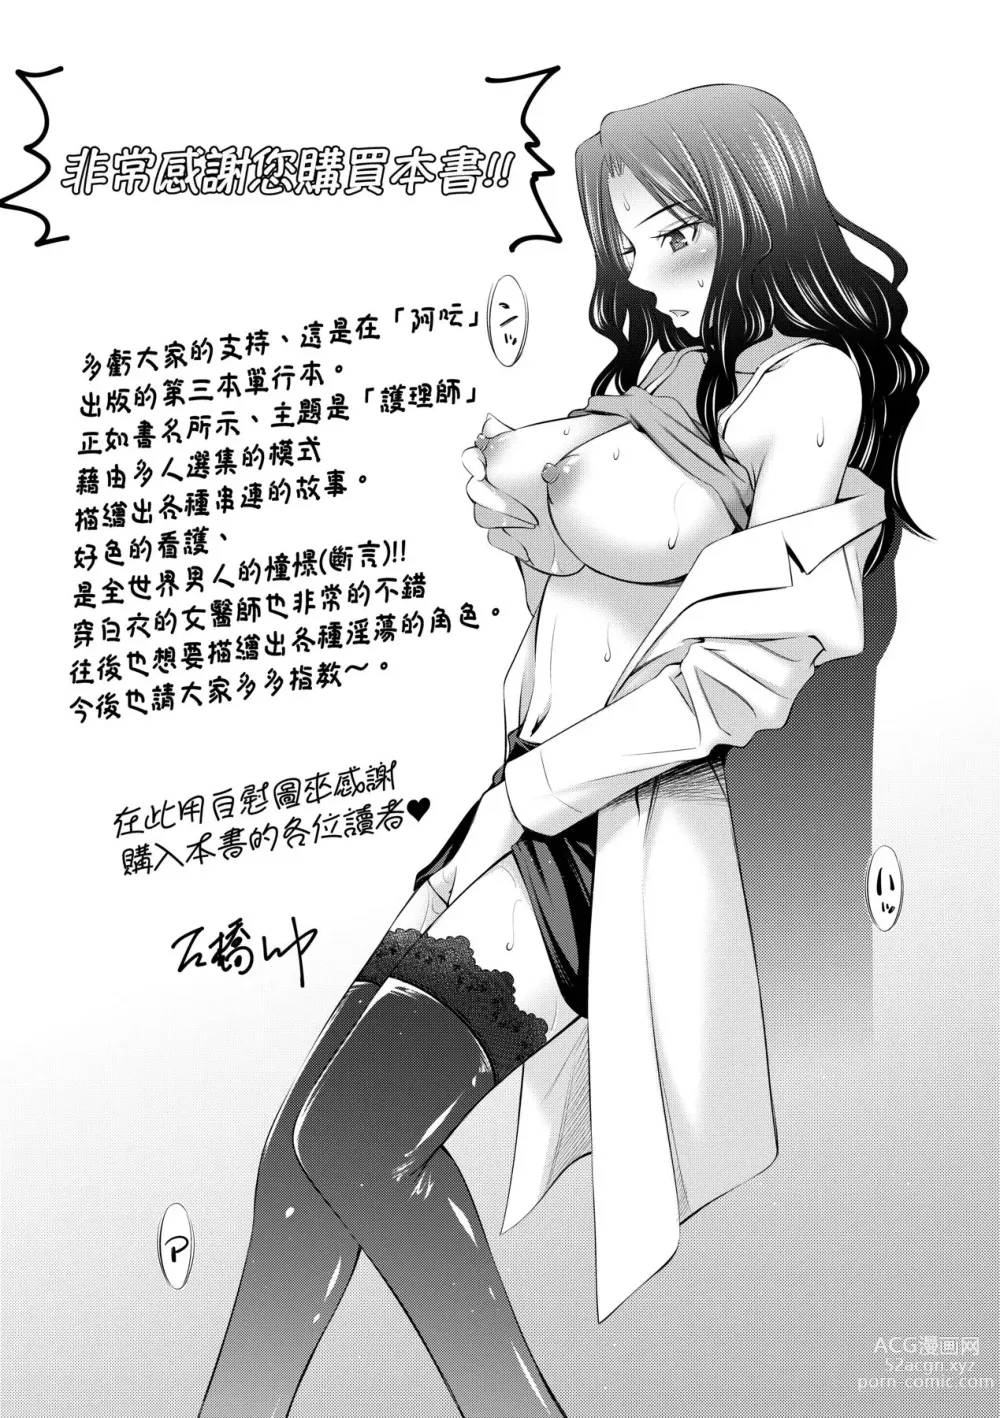 Page 202 of manga Hataraku Kangoshi no Sei Jijou (decensored)